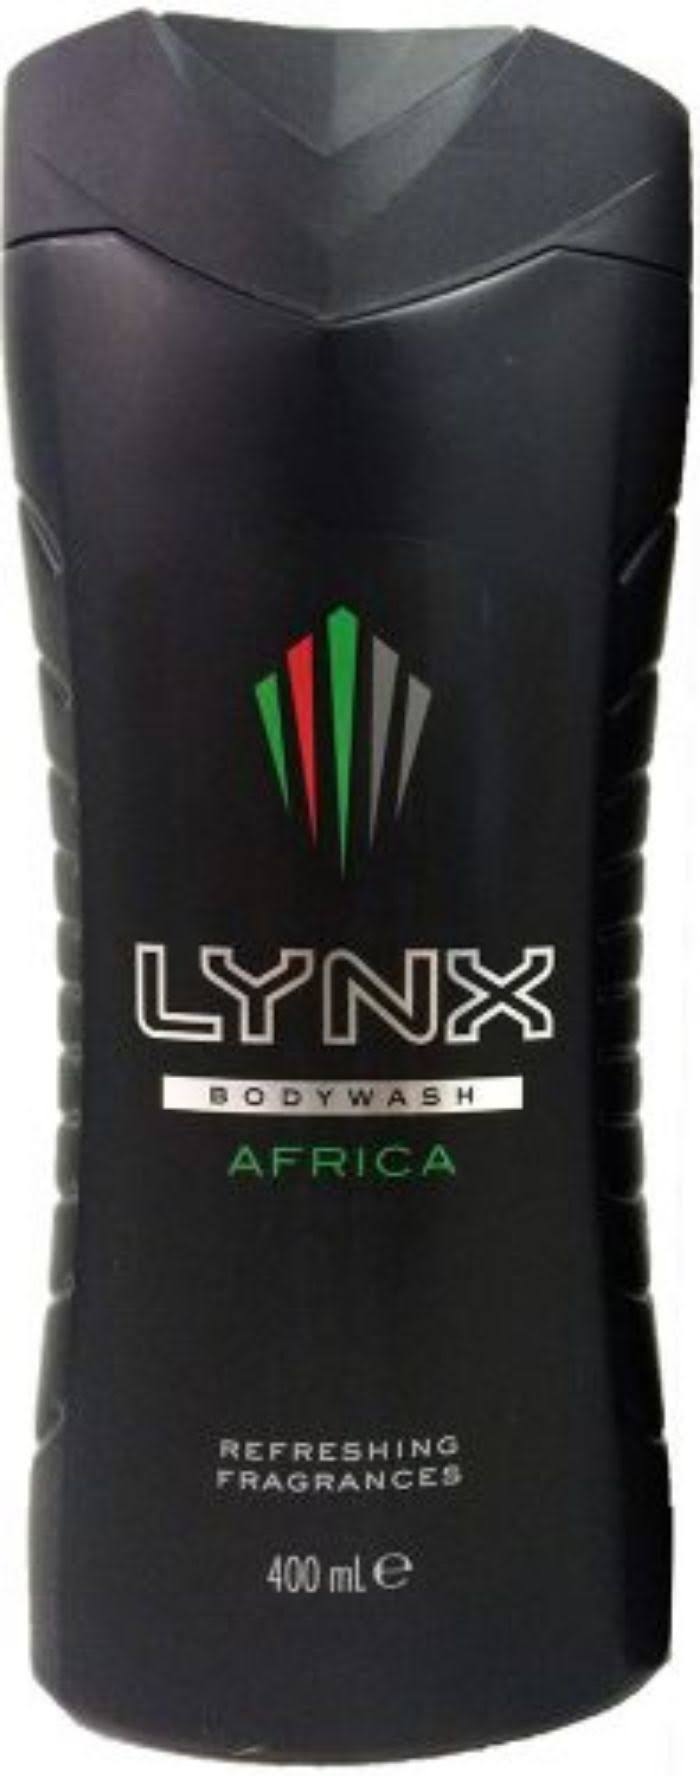 Lynx Africa Body Wash - 400ml